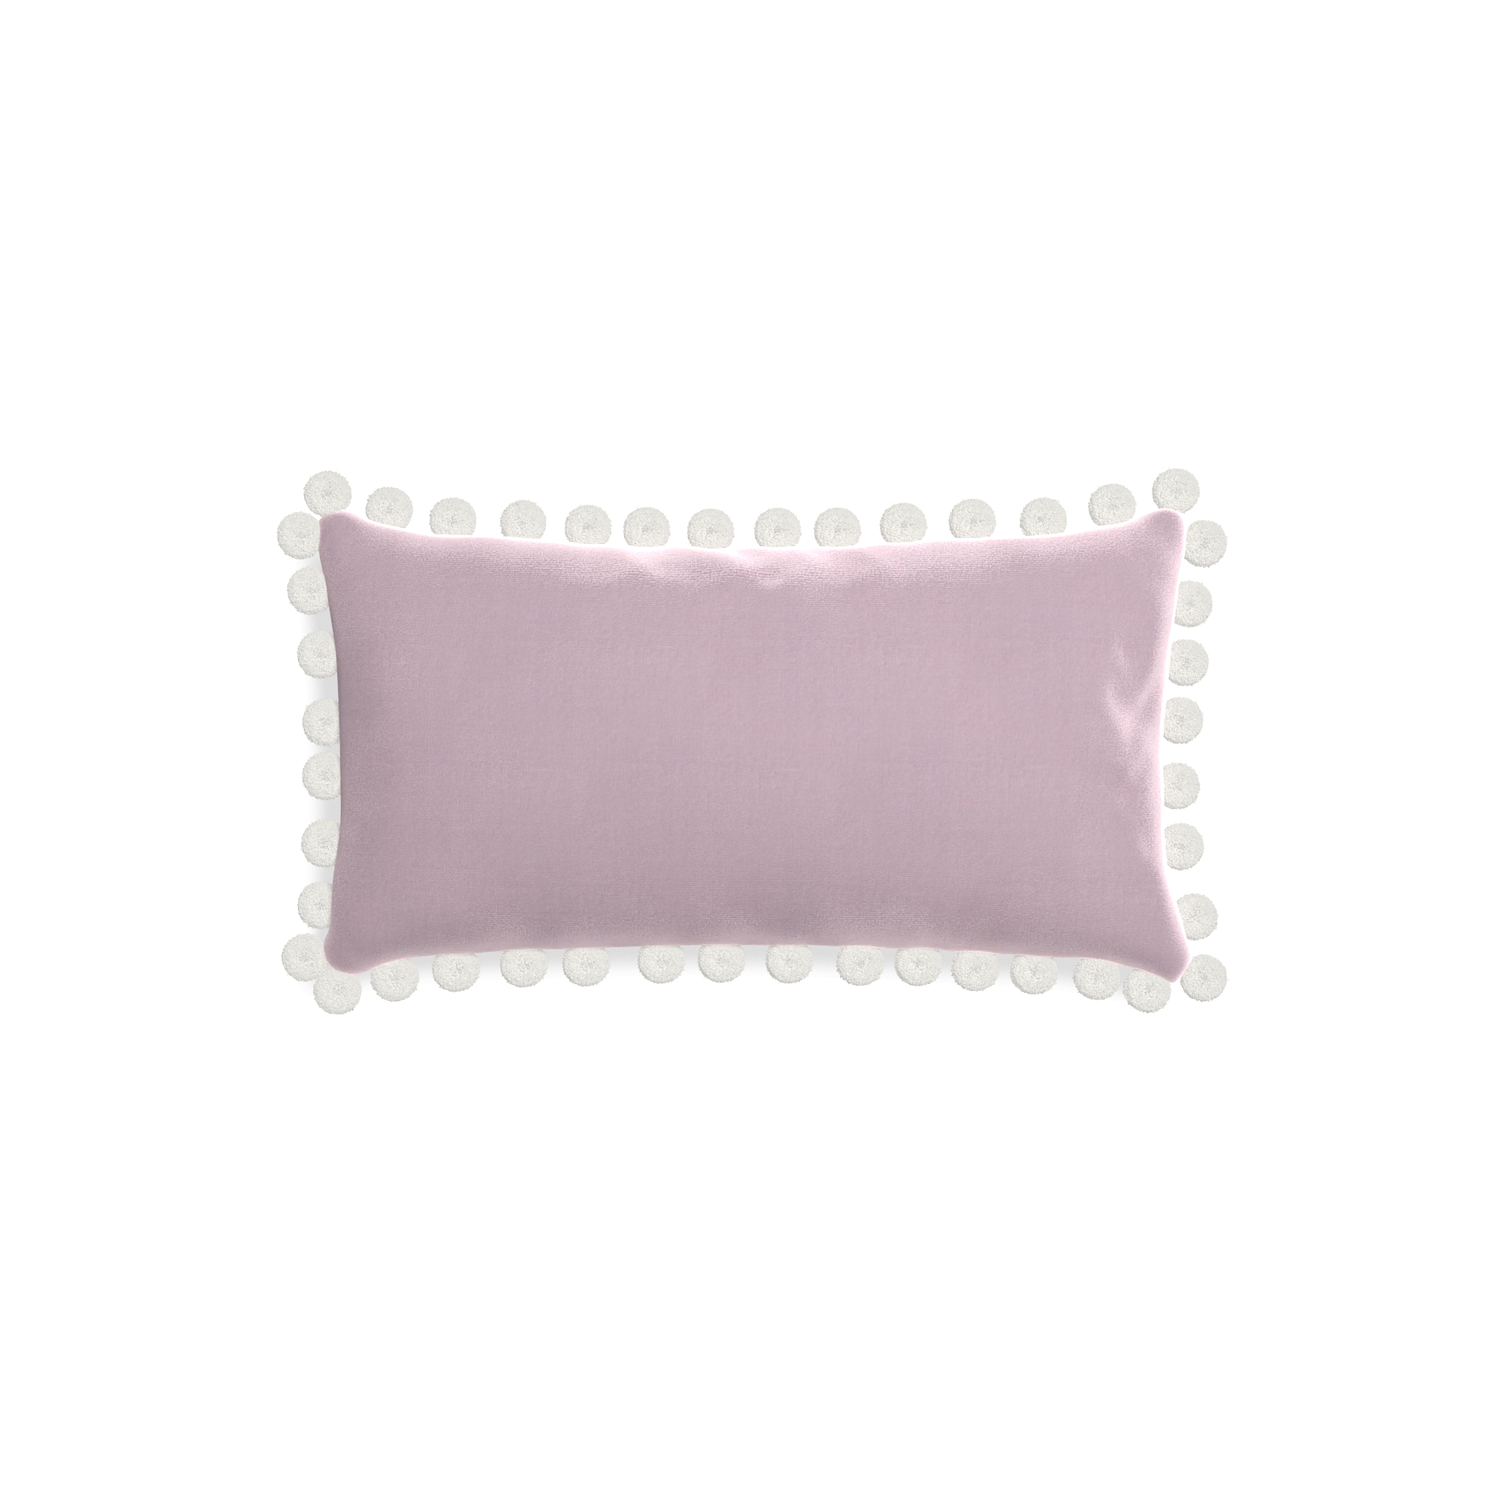 rectangle lilac velvet pillow with white pom poms